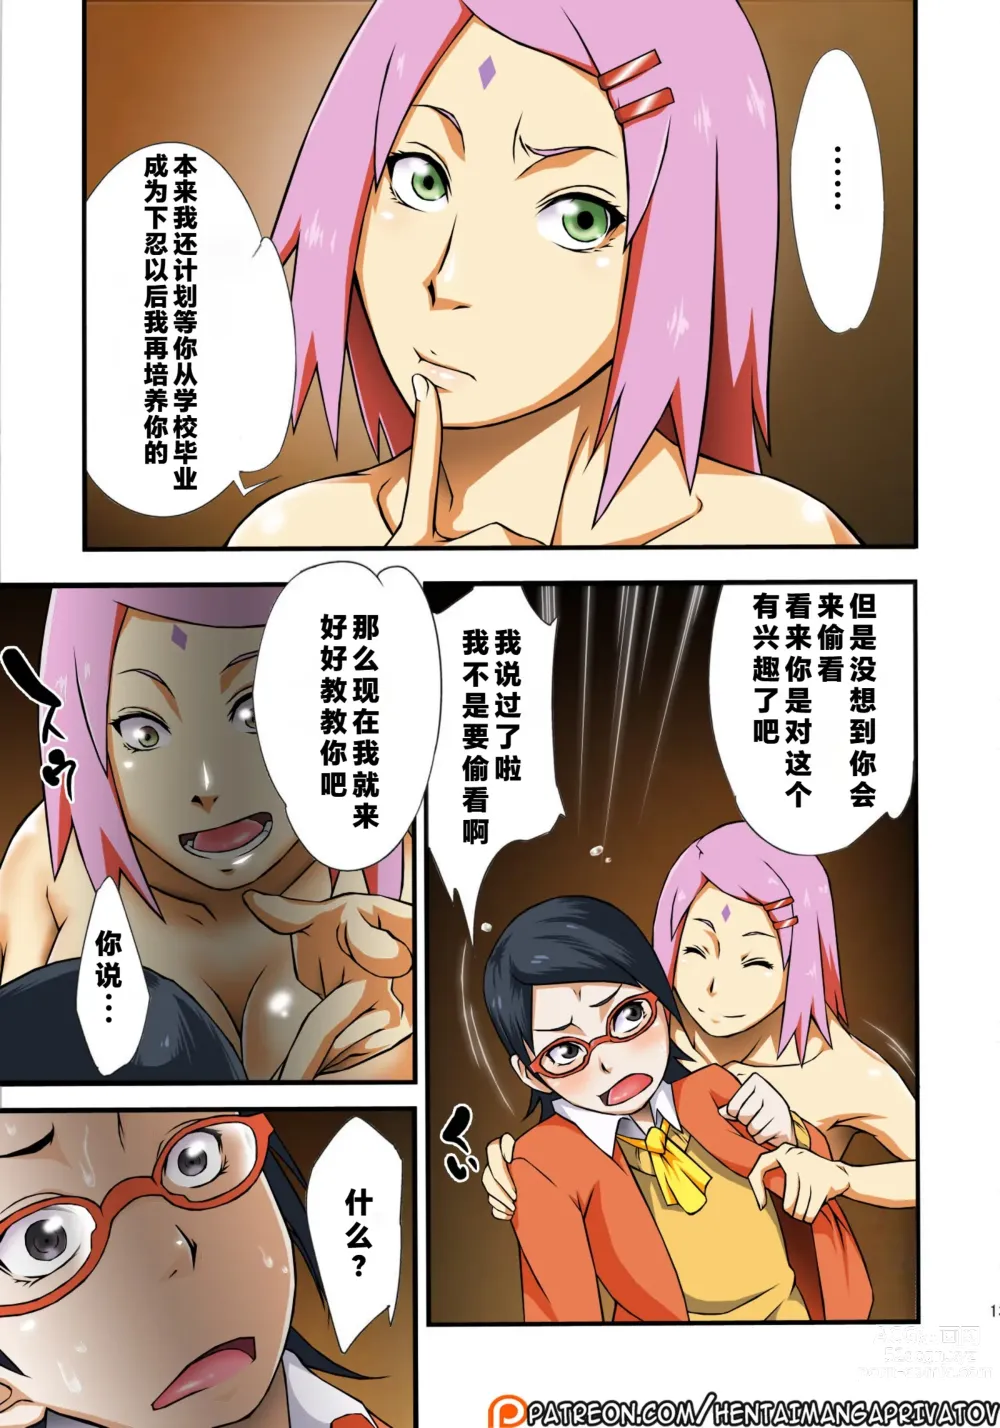 Page 13 of doujinshi Konoha-don